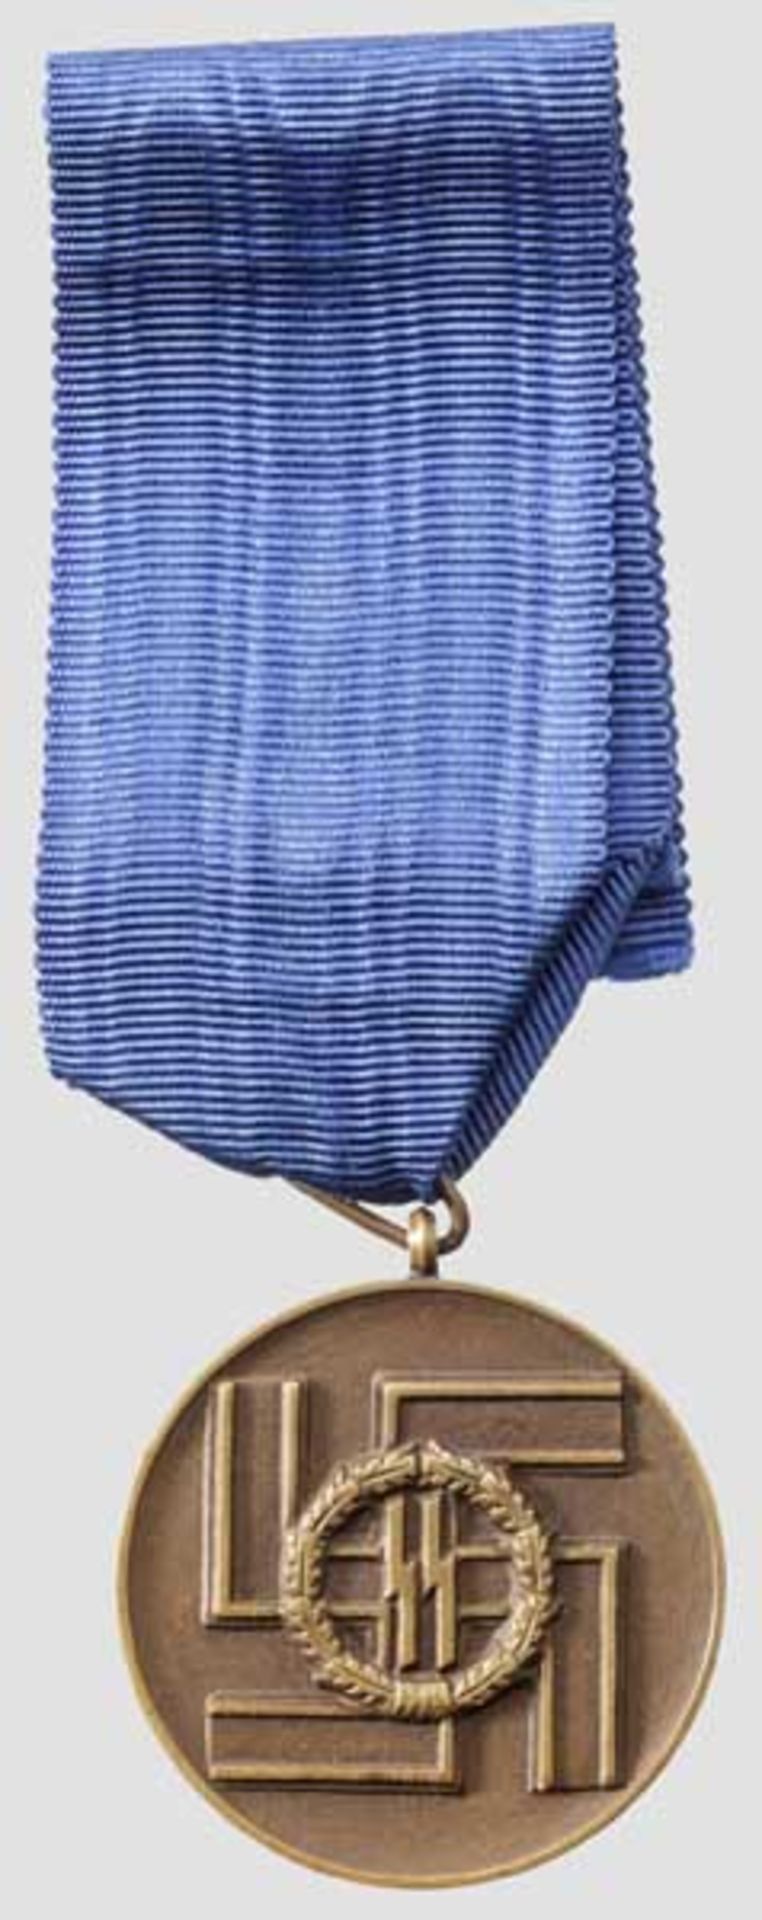 SS-Dienstauszeichnung 3. Stufe für acht Jahre Hellbraun gebeizte Medaille mit Tropfen-Bandring in